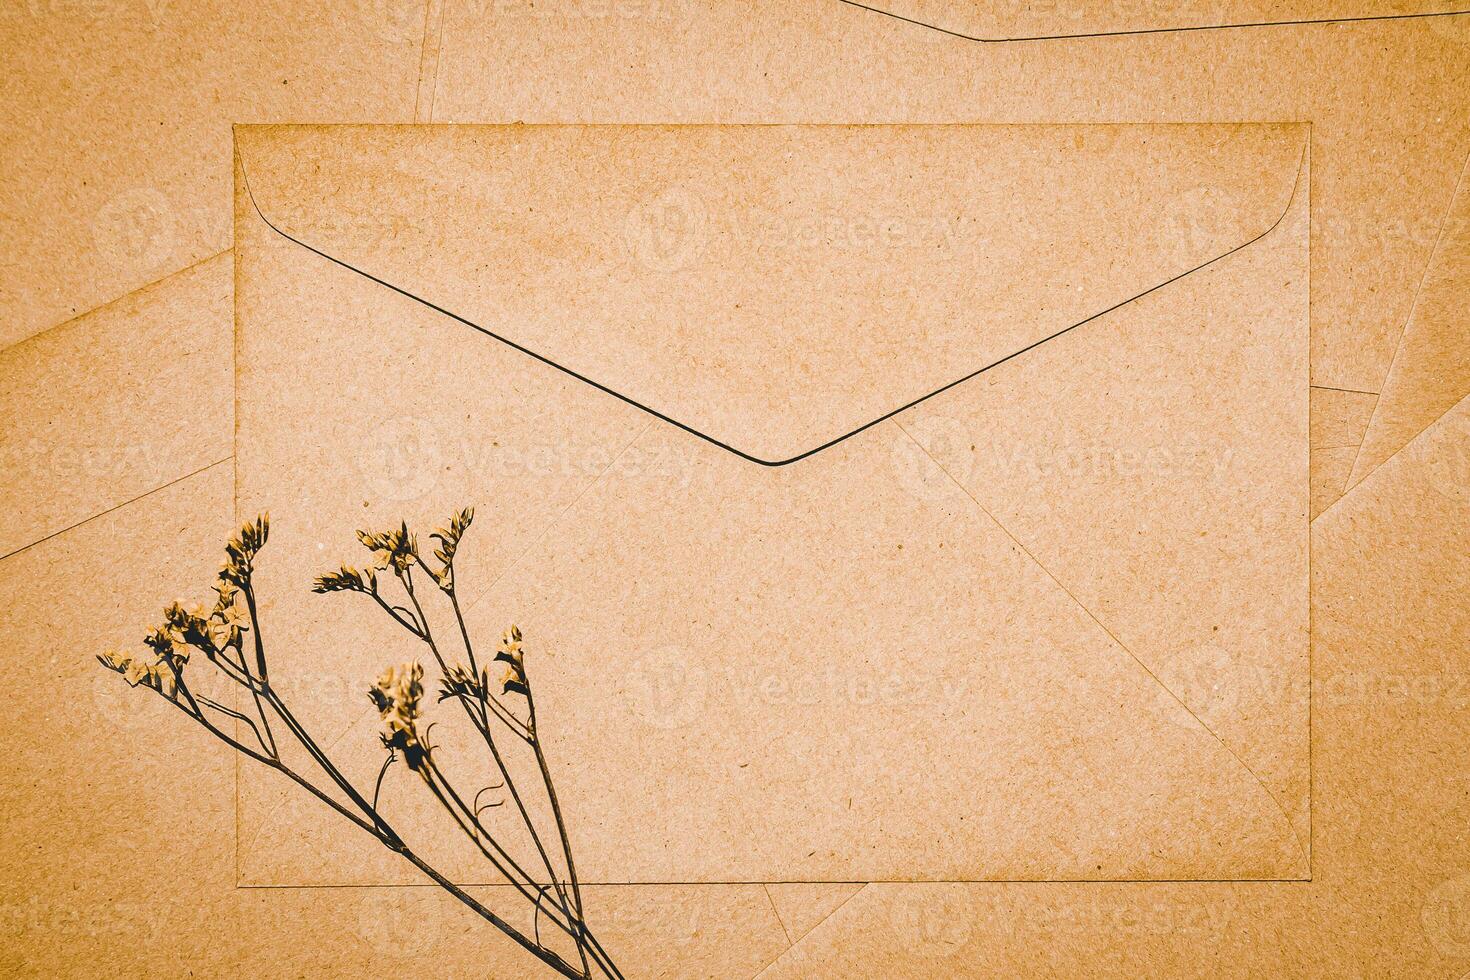 sobre de papel marrón con flor seca de limonium. primer plano del sobre artesanal. minimalismo plano. foto